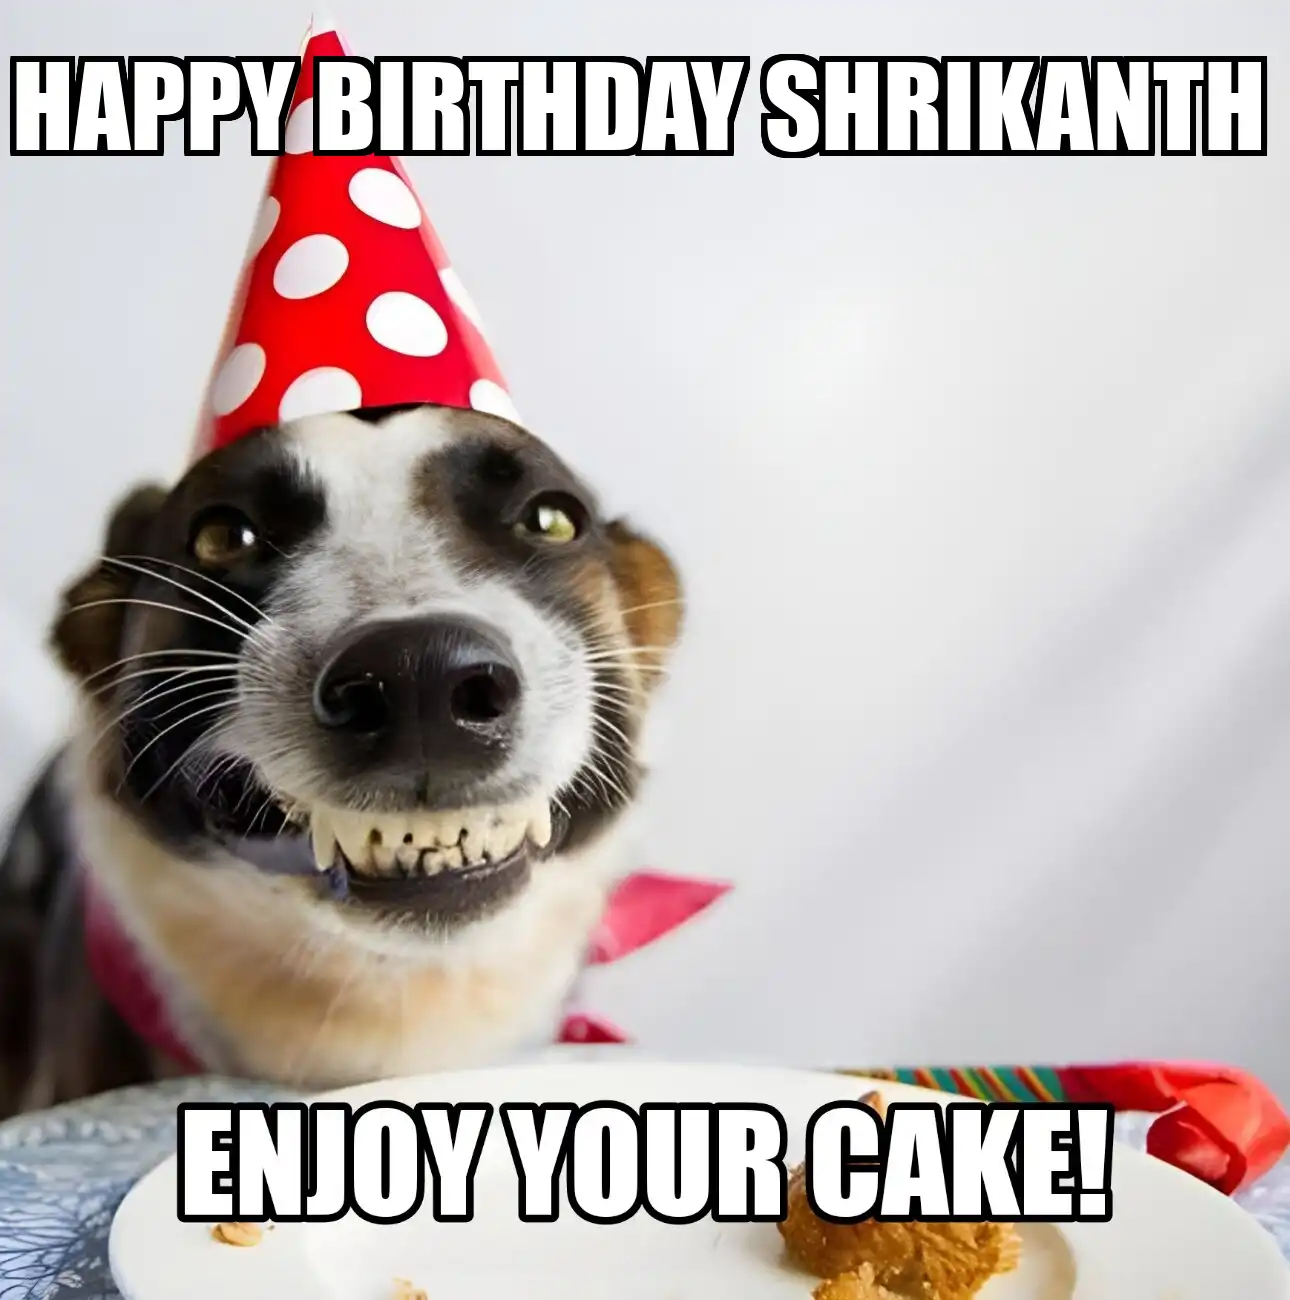 Happy Birthday Shrikanth Enjoy Your Cake Dog Meme